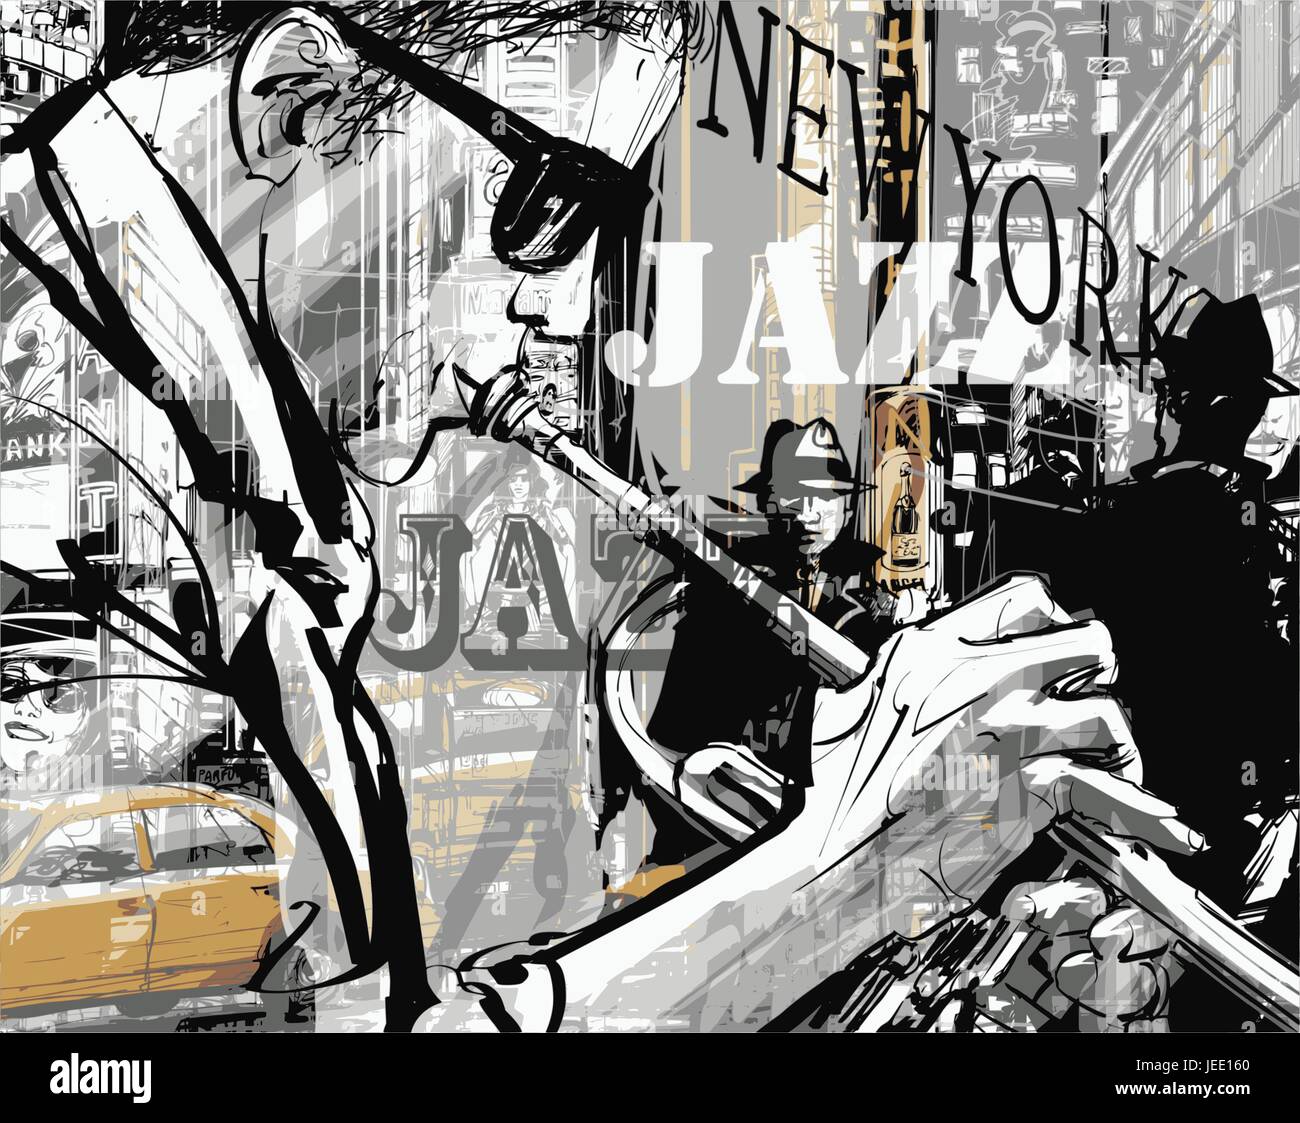 Jazz-Trompeter in einer Straße von New York - Vektor-illustration Stock Vektor